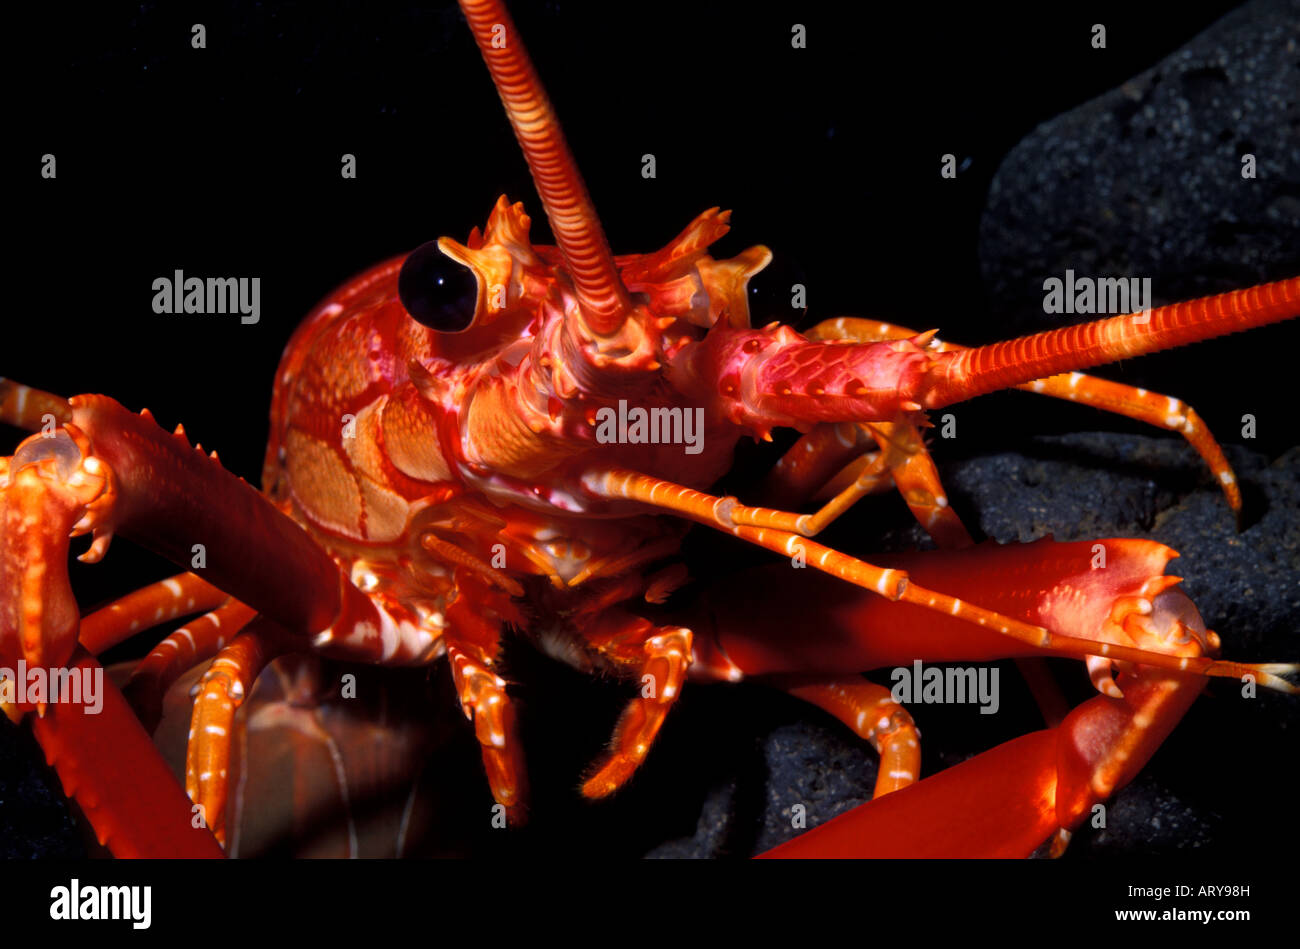 The Hawaiian Lobster (Justitia longimanus). Stock Photo